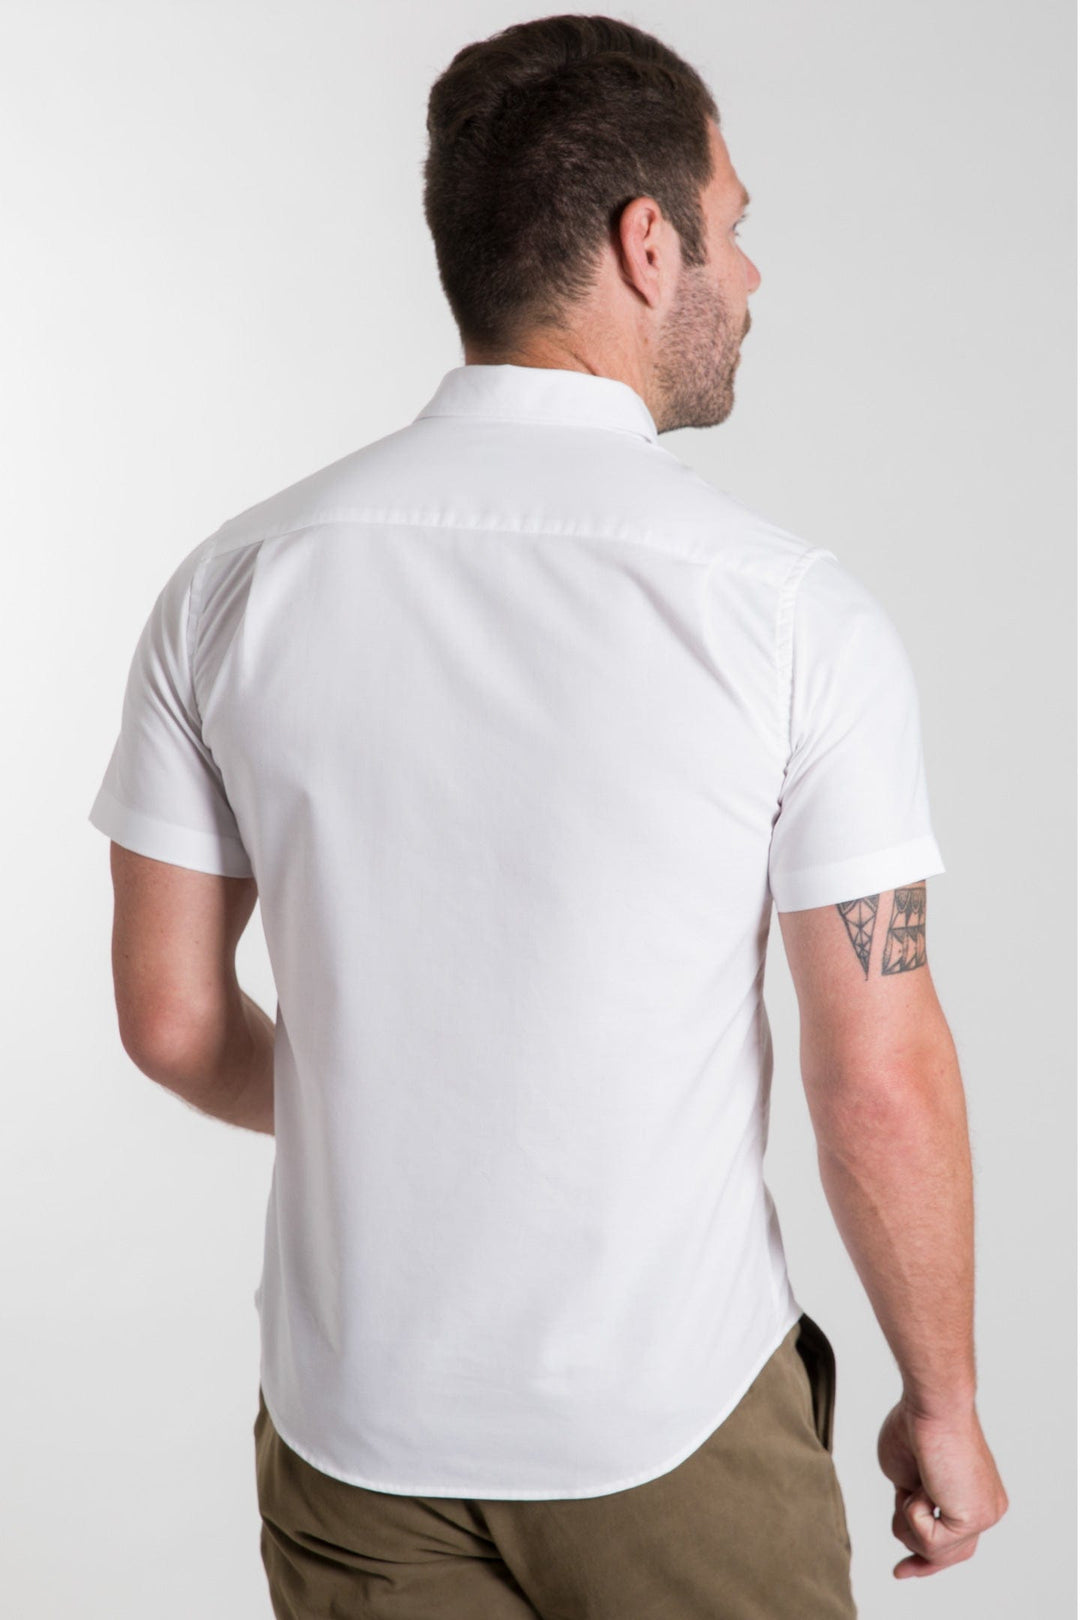 Ash & Erie White Oxford Wrinkle Free Short Sleeve Shirt for Short Men